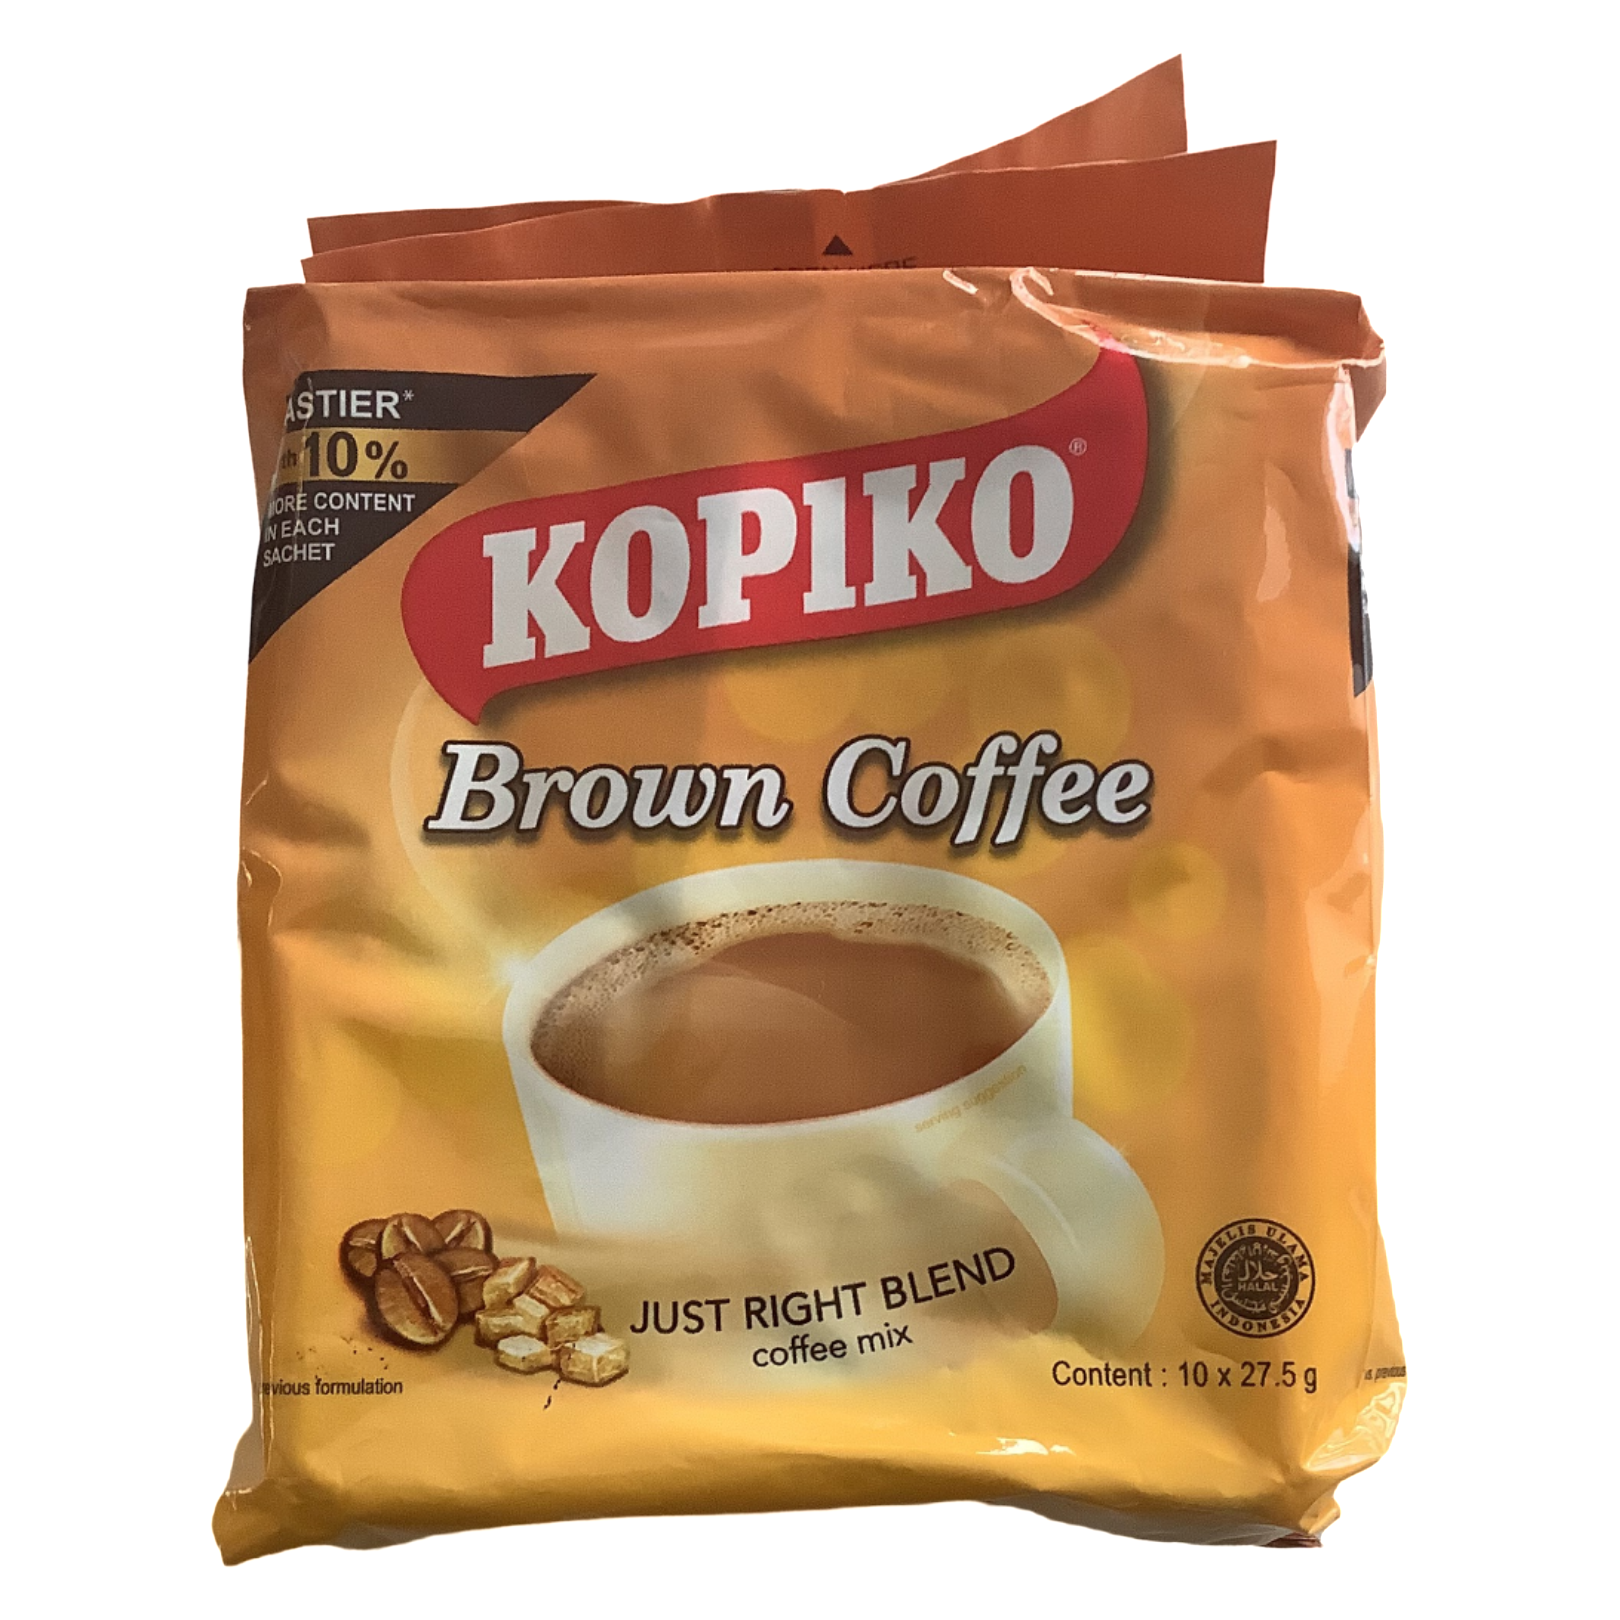 Kopiko Brown Coffee  (10 x 27.5g)